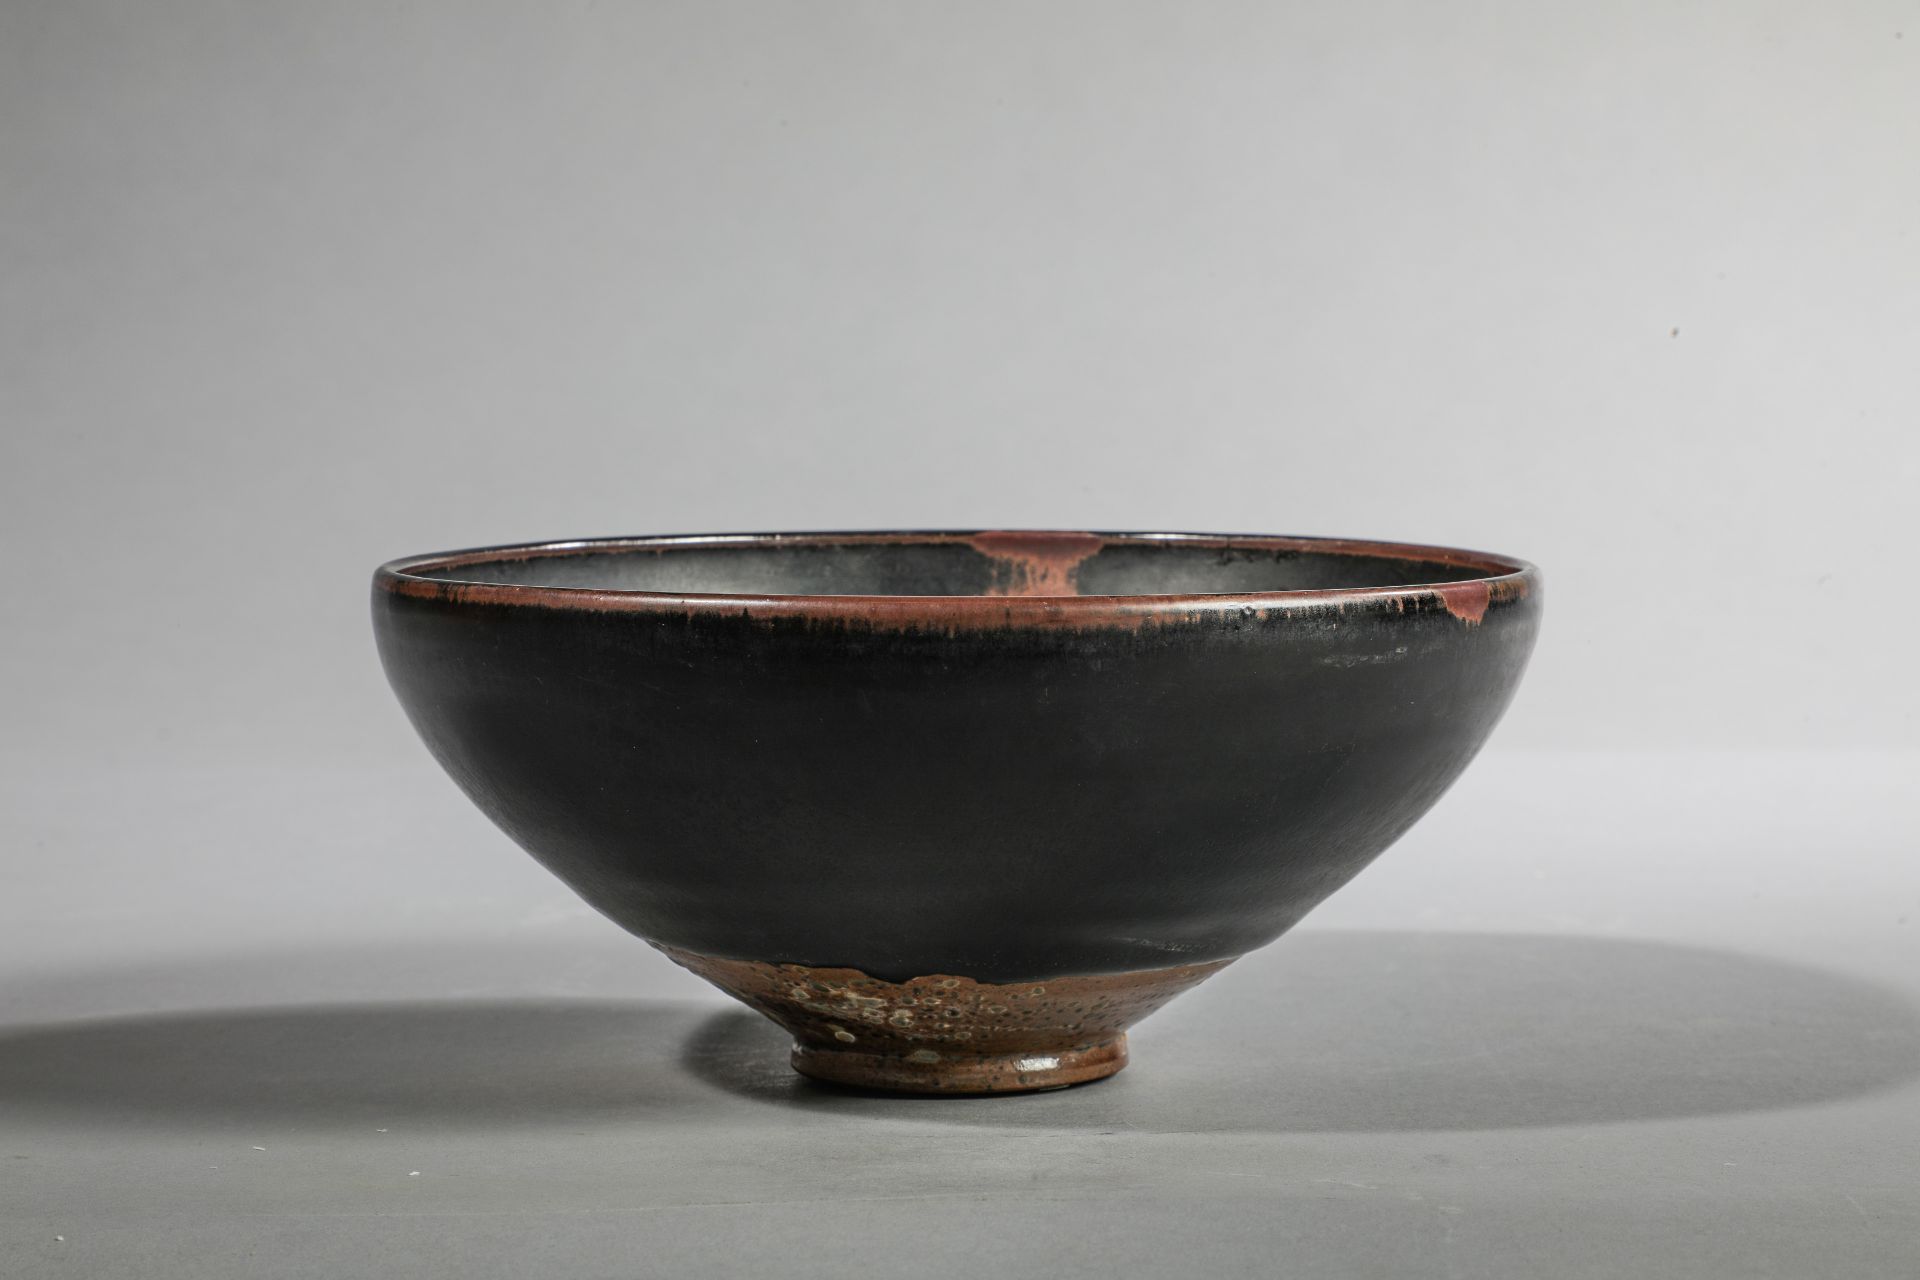 Coupe de forme lianzi sur pied en couronne en fin grès porcelaineux à glaçure monochrome noire ornée - Image 6 of 6